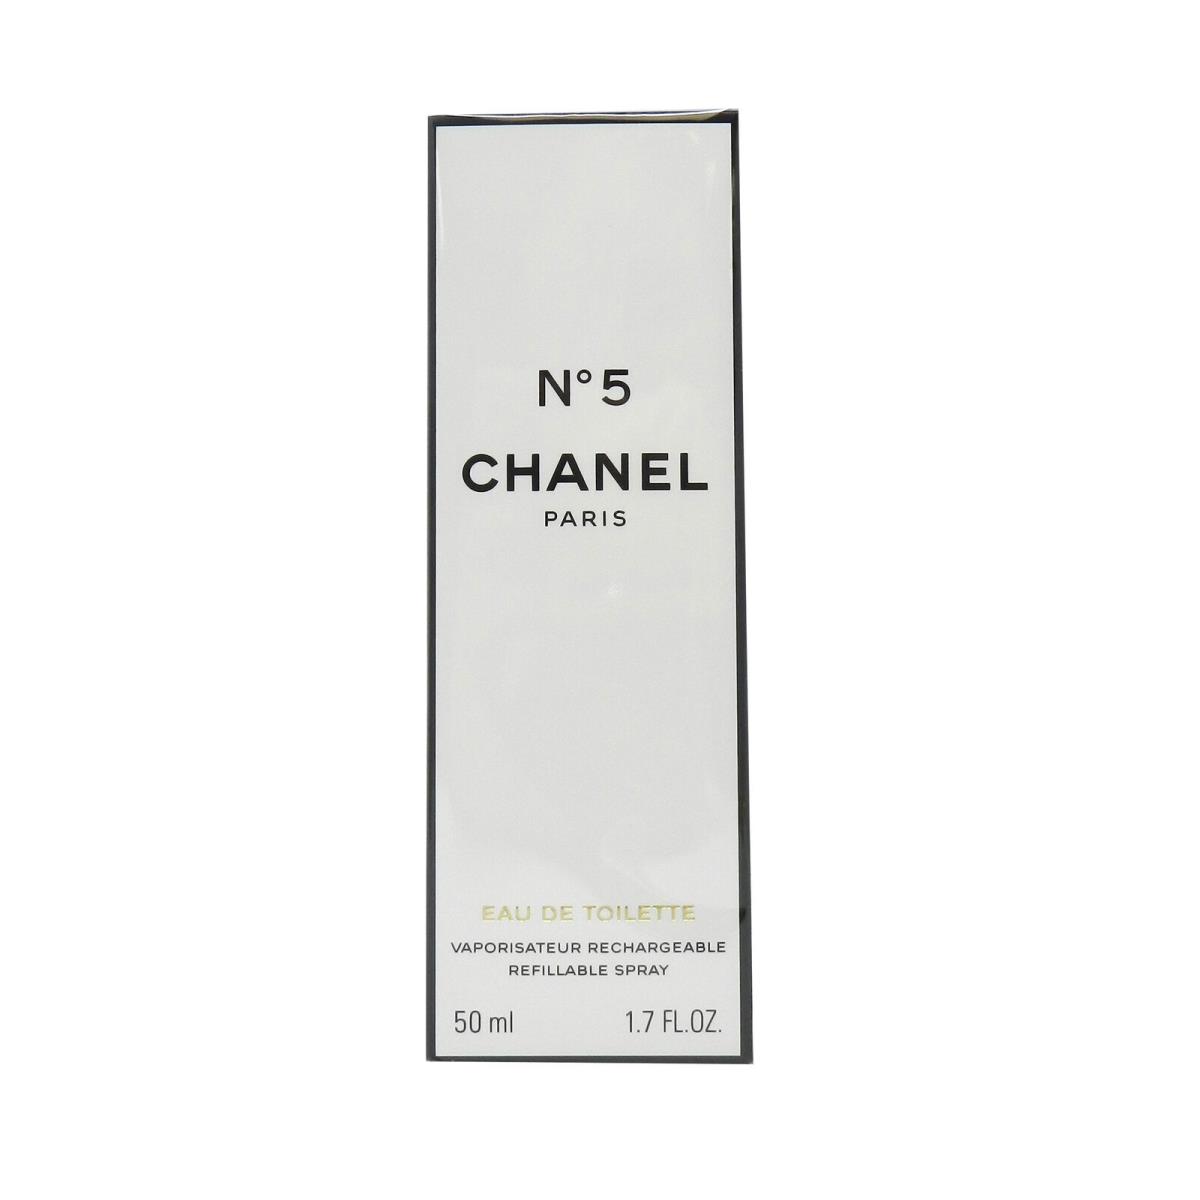 Chanel No. 5 Edt Refillable Spray 1.7 oz